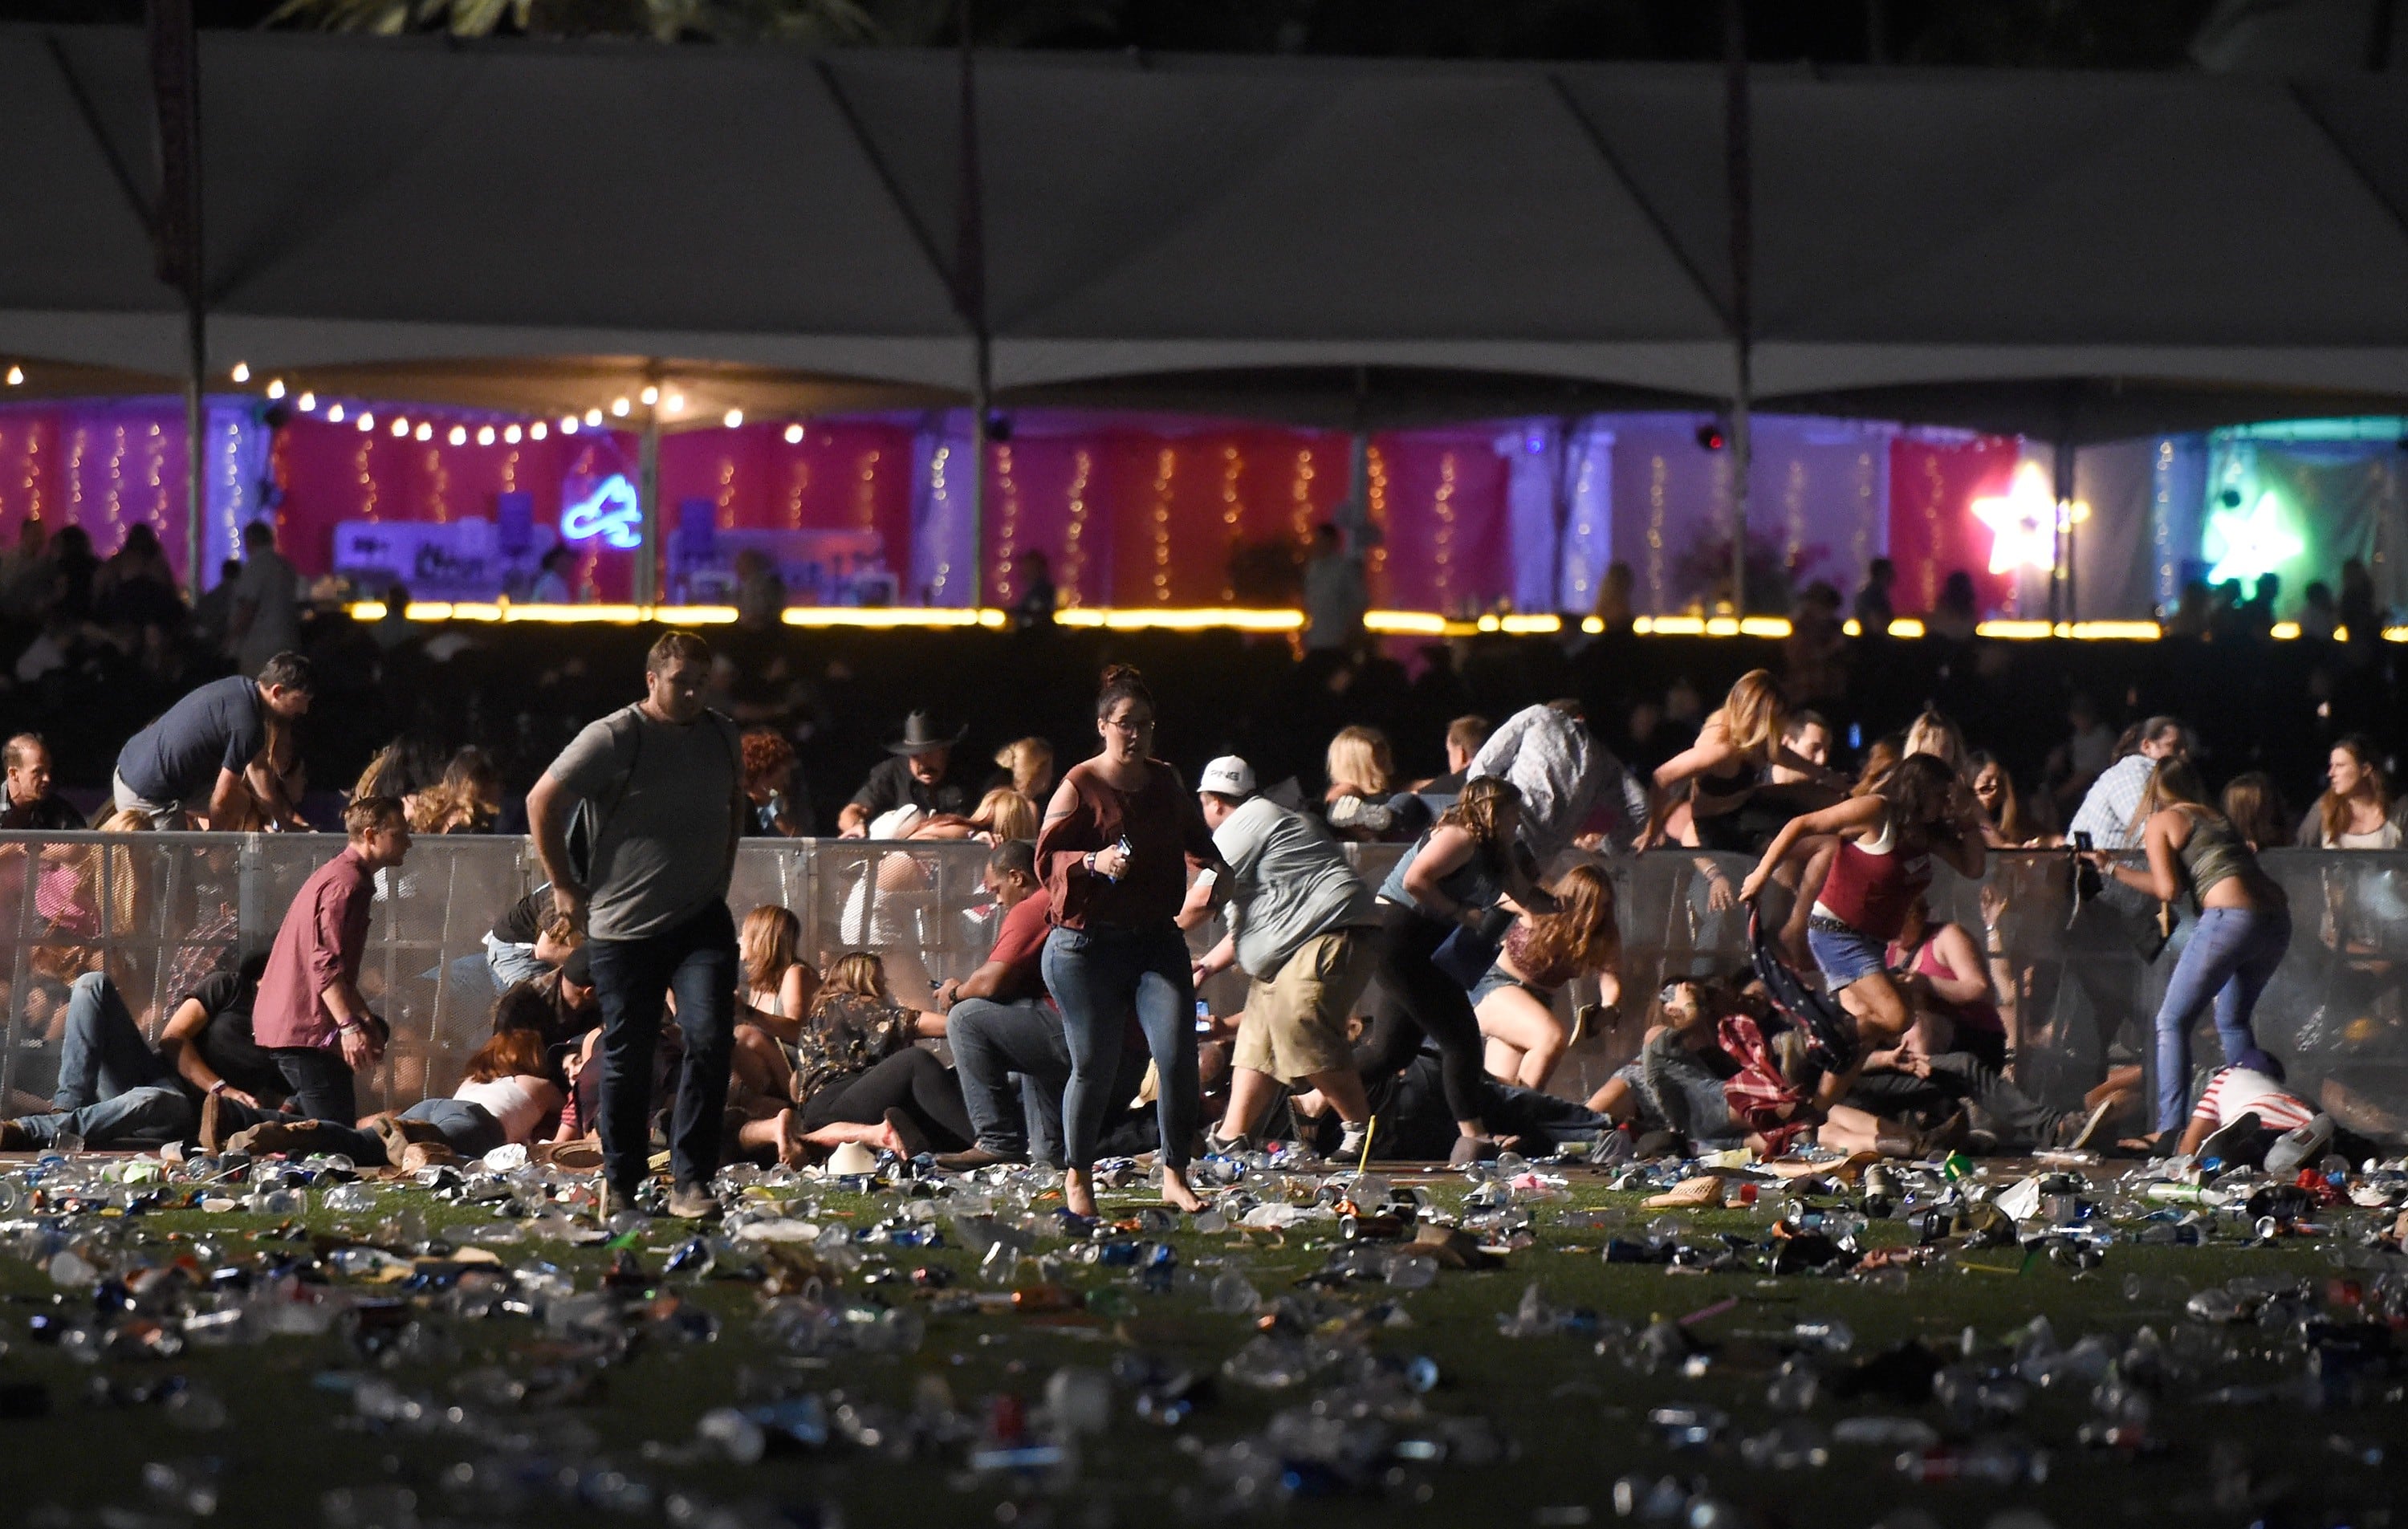 Tiroteo en Las Vegas: videos y fotos de la masacre que dejó 50 muertos y más de 400 heridos (AFP)